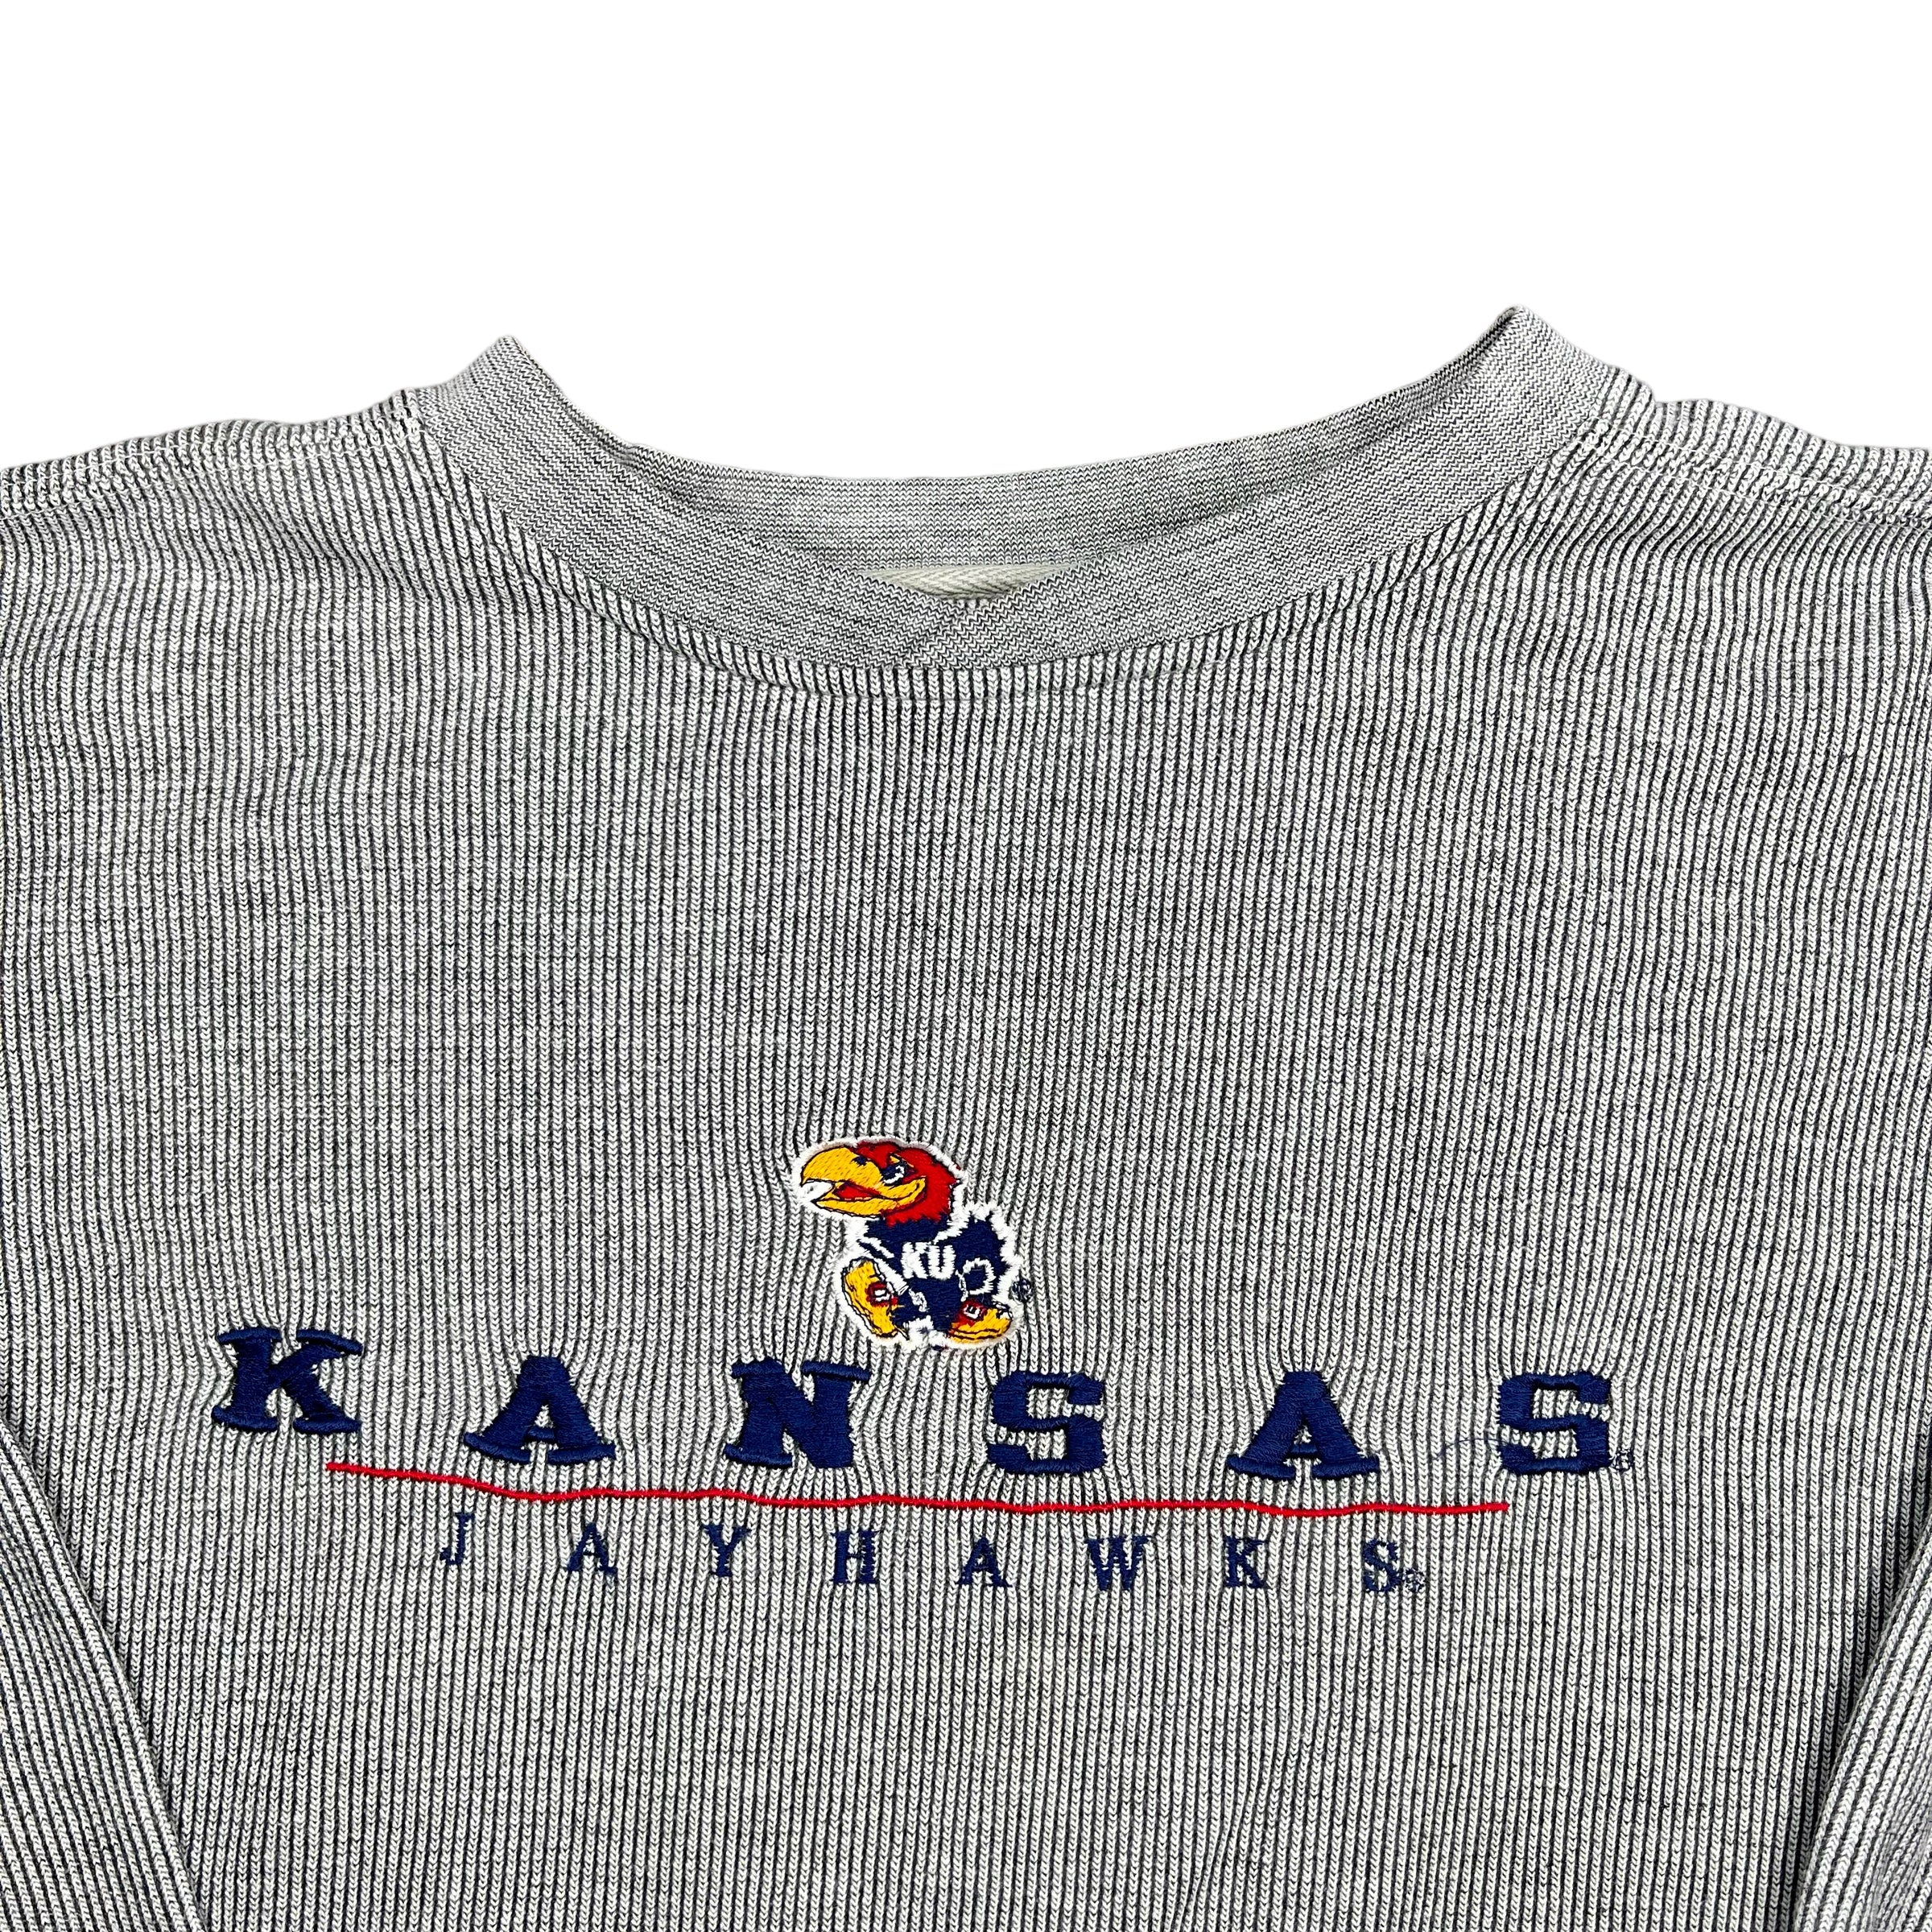 Vintage KU Sweatshirt - (L)